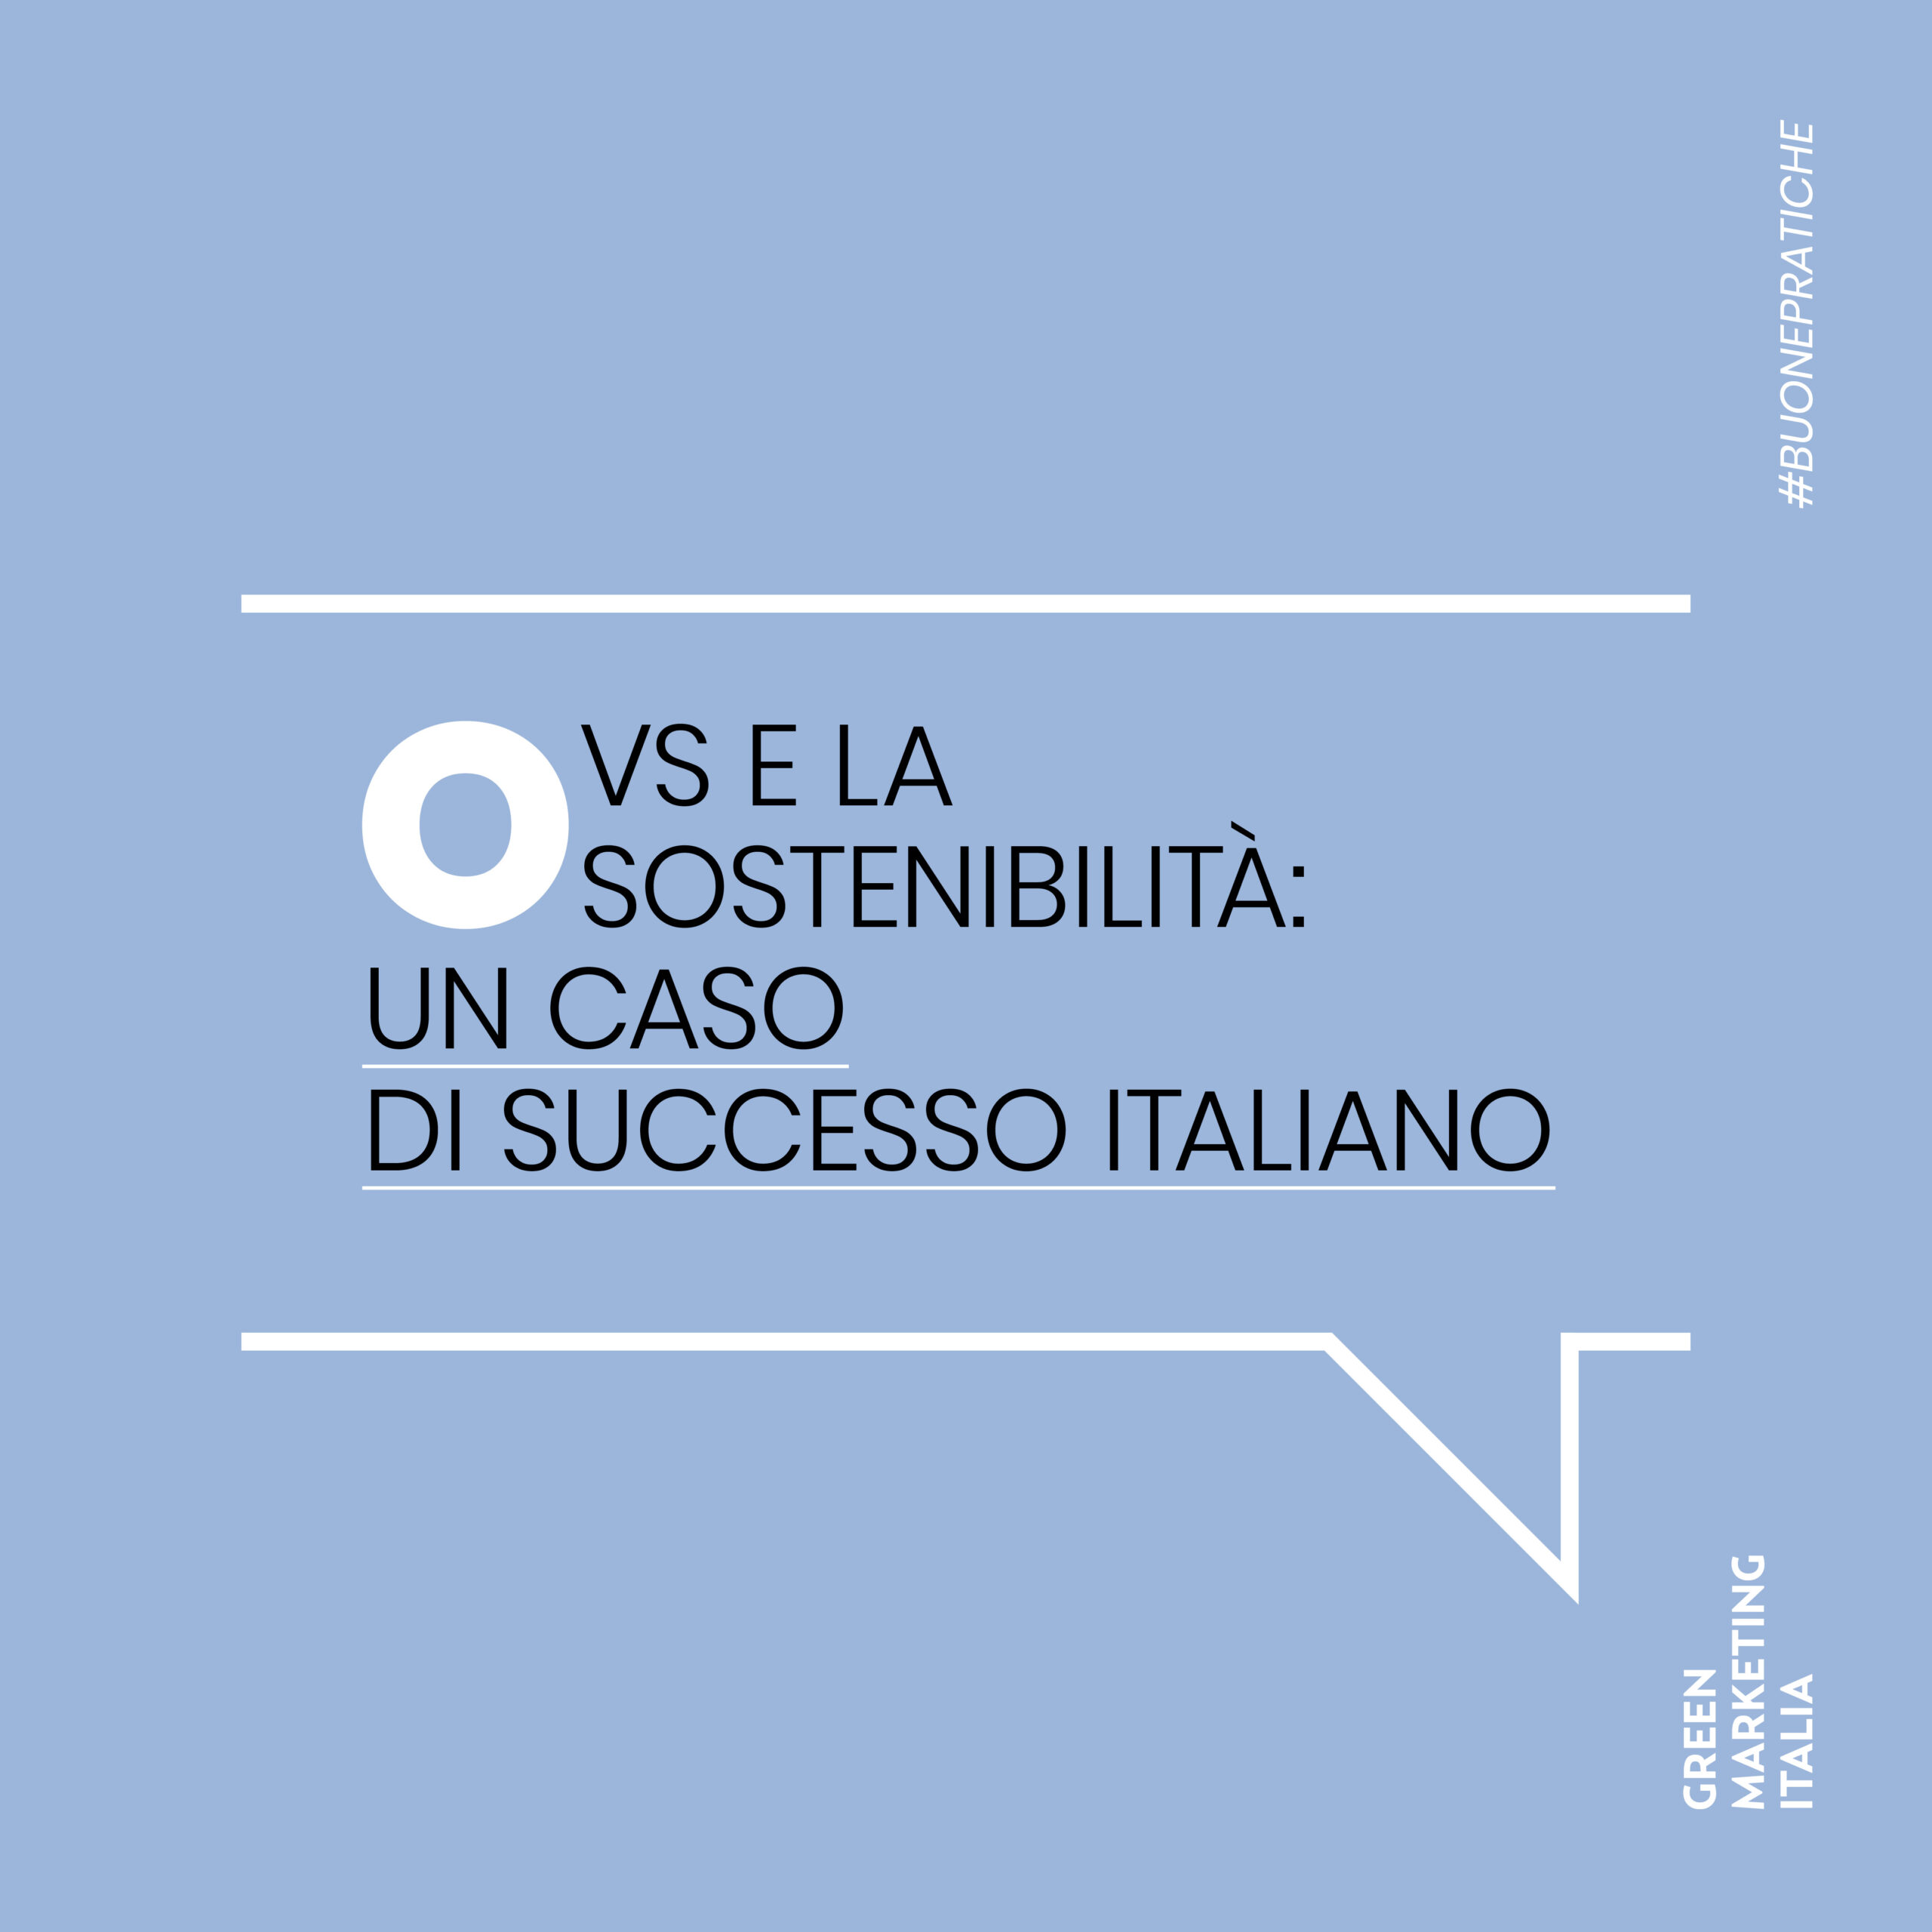 OVS e la sostenibilità: un caso di successo italiano